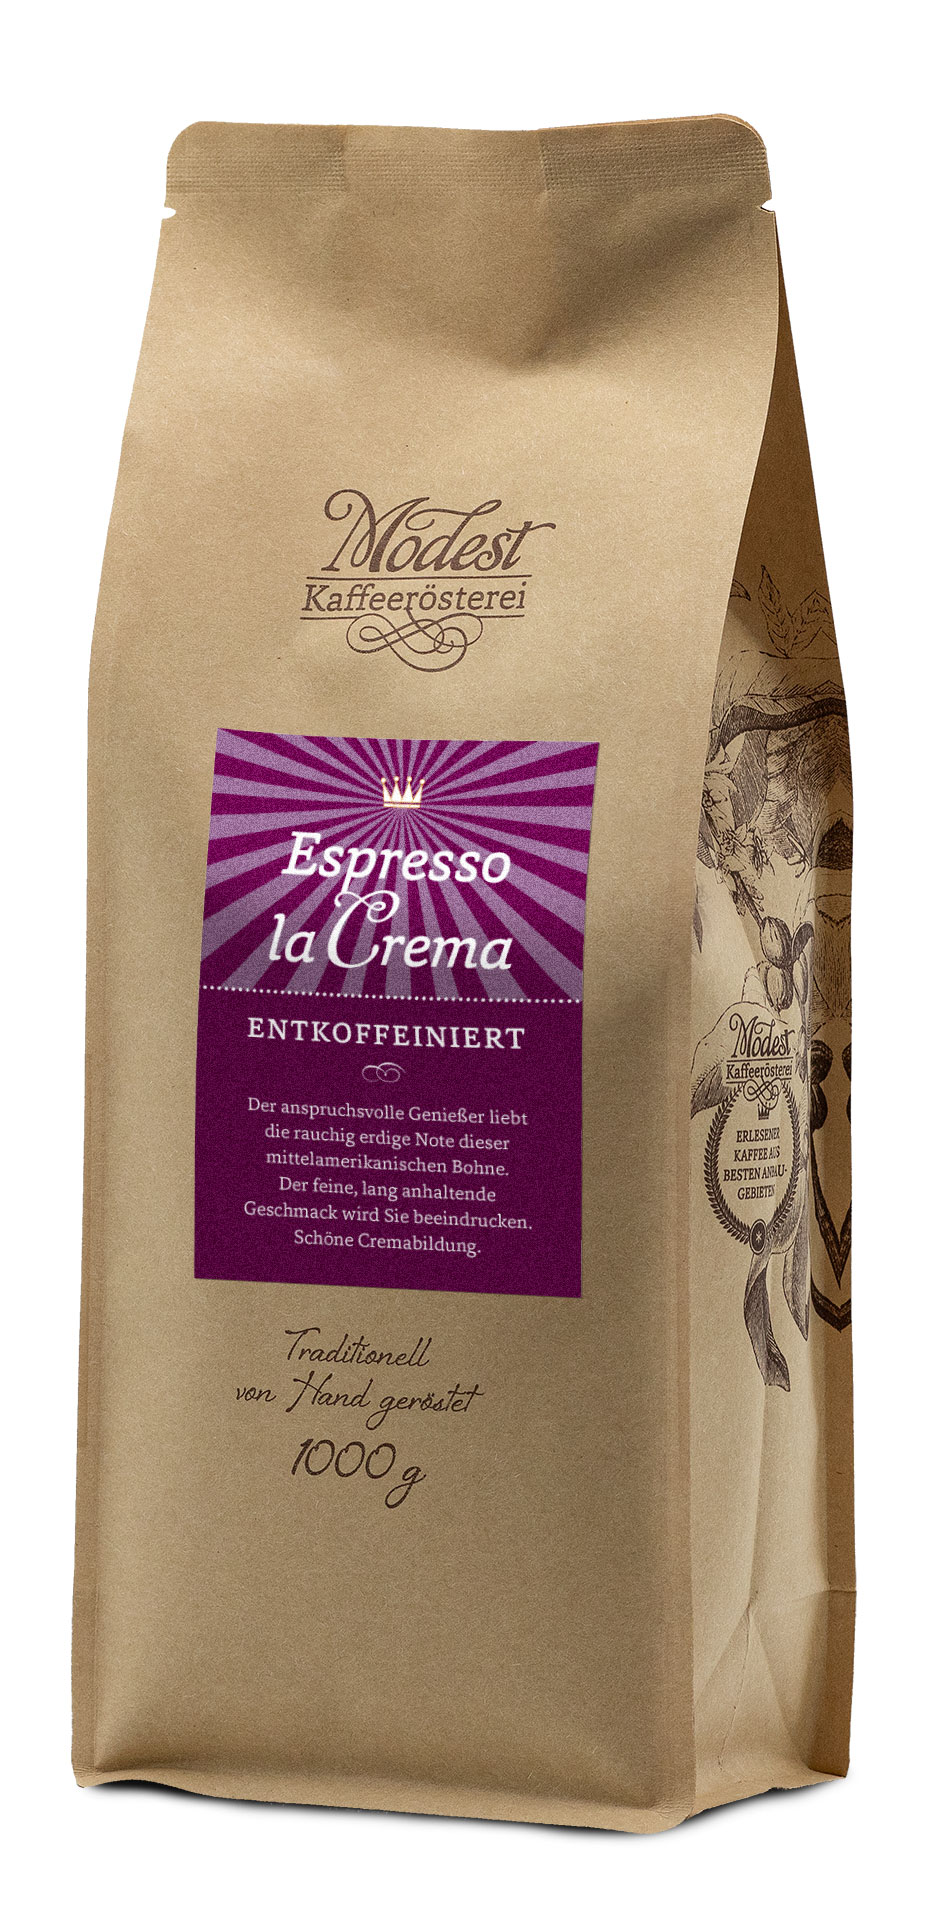 Espresso La Crema entkoffeiniert